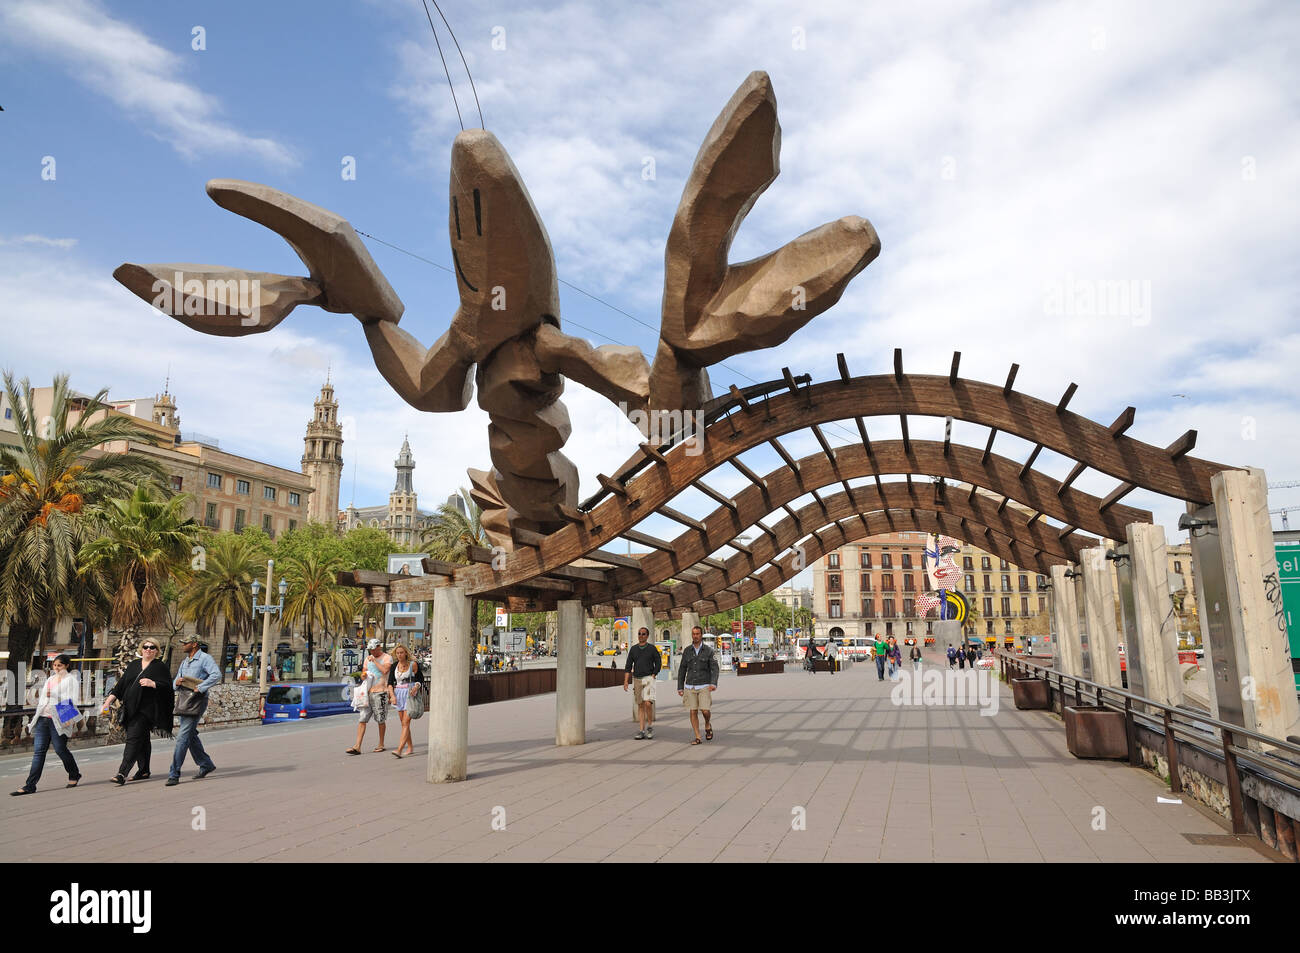 Homard de la sculpture à Barcelone, Espagne Banque D'Images